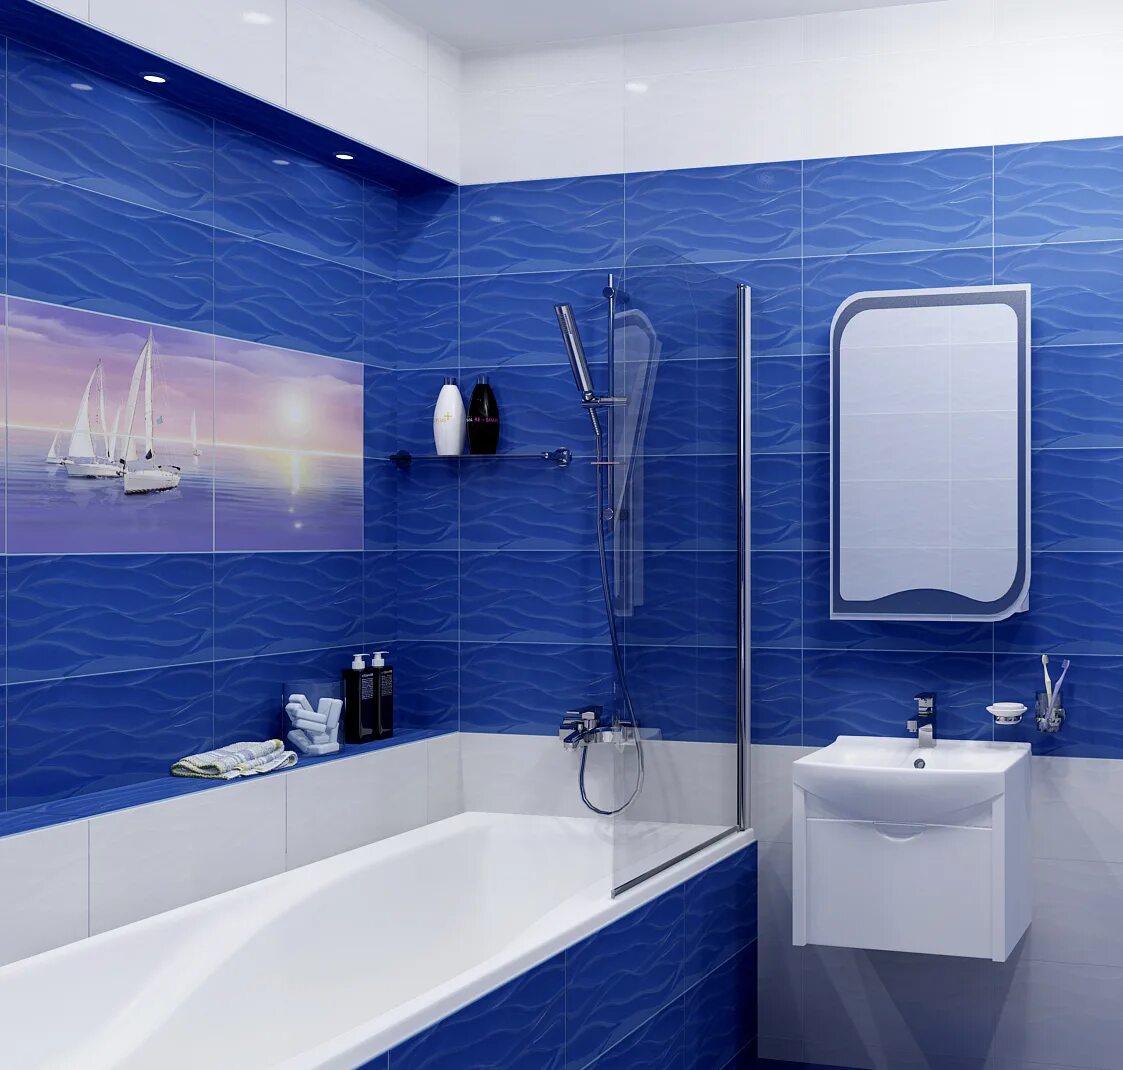 Ванна панель красноярск. Синяя ванная комната. Ванная в синем цвете. Плитка для ванной комнаты синяя. Плитка в ванную синяя.